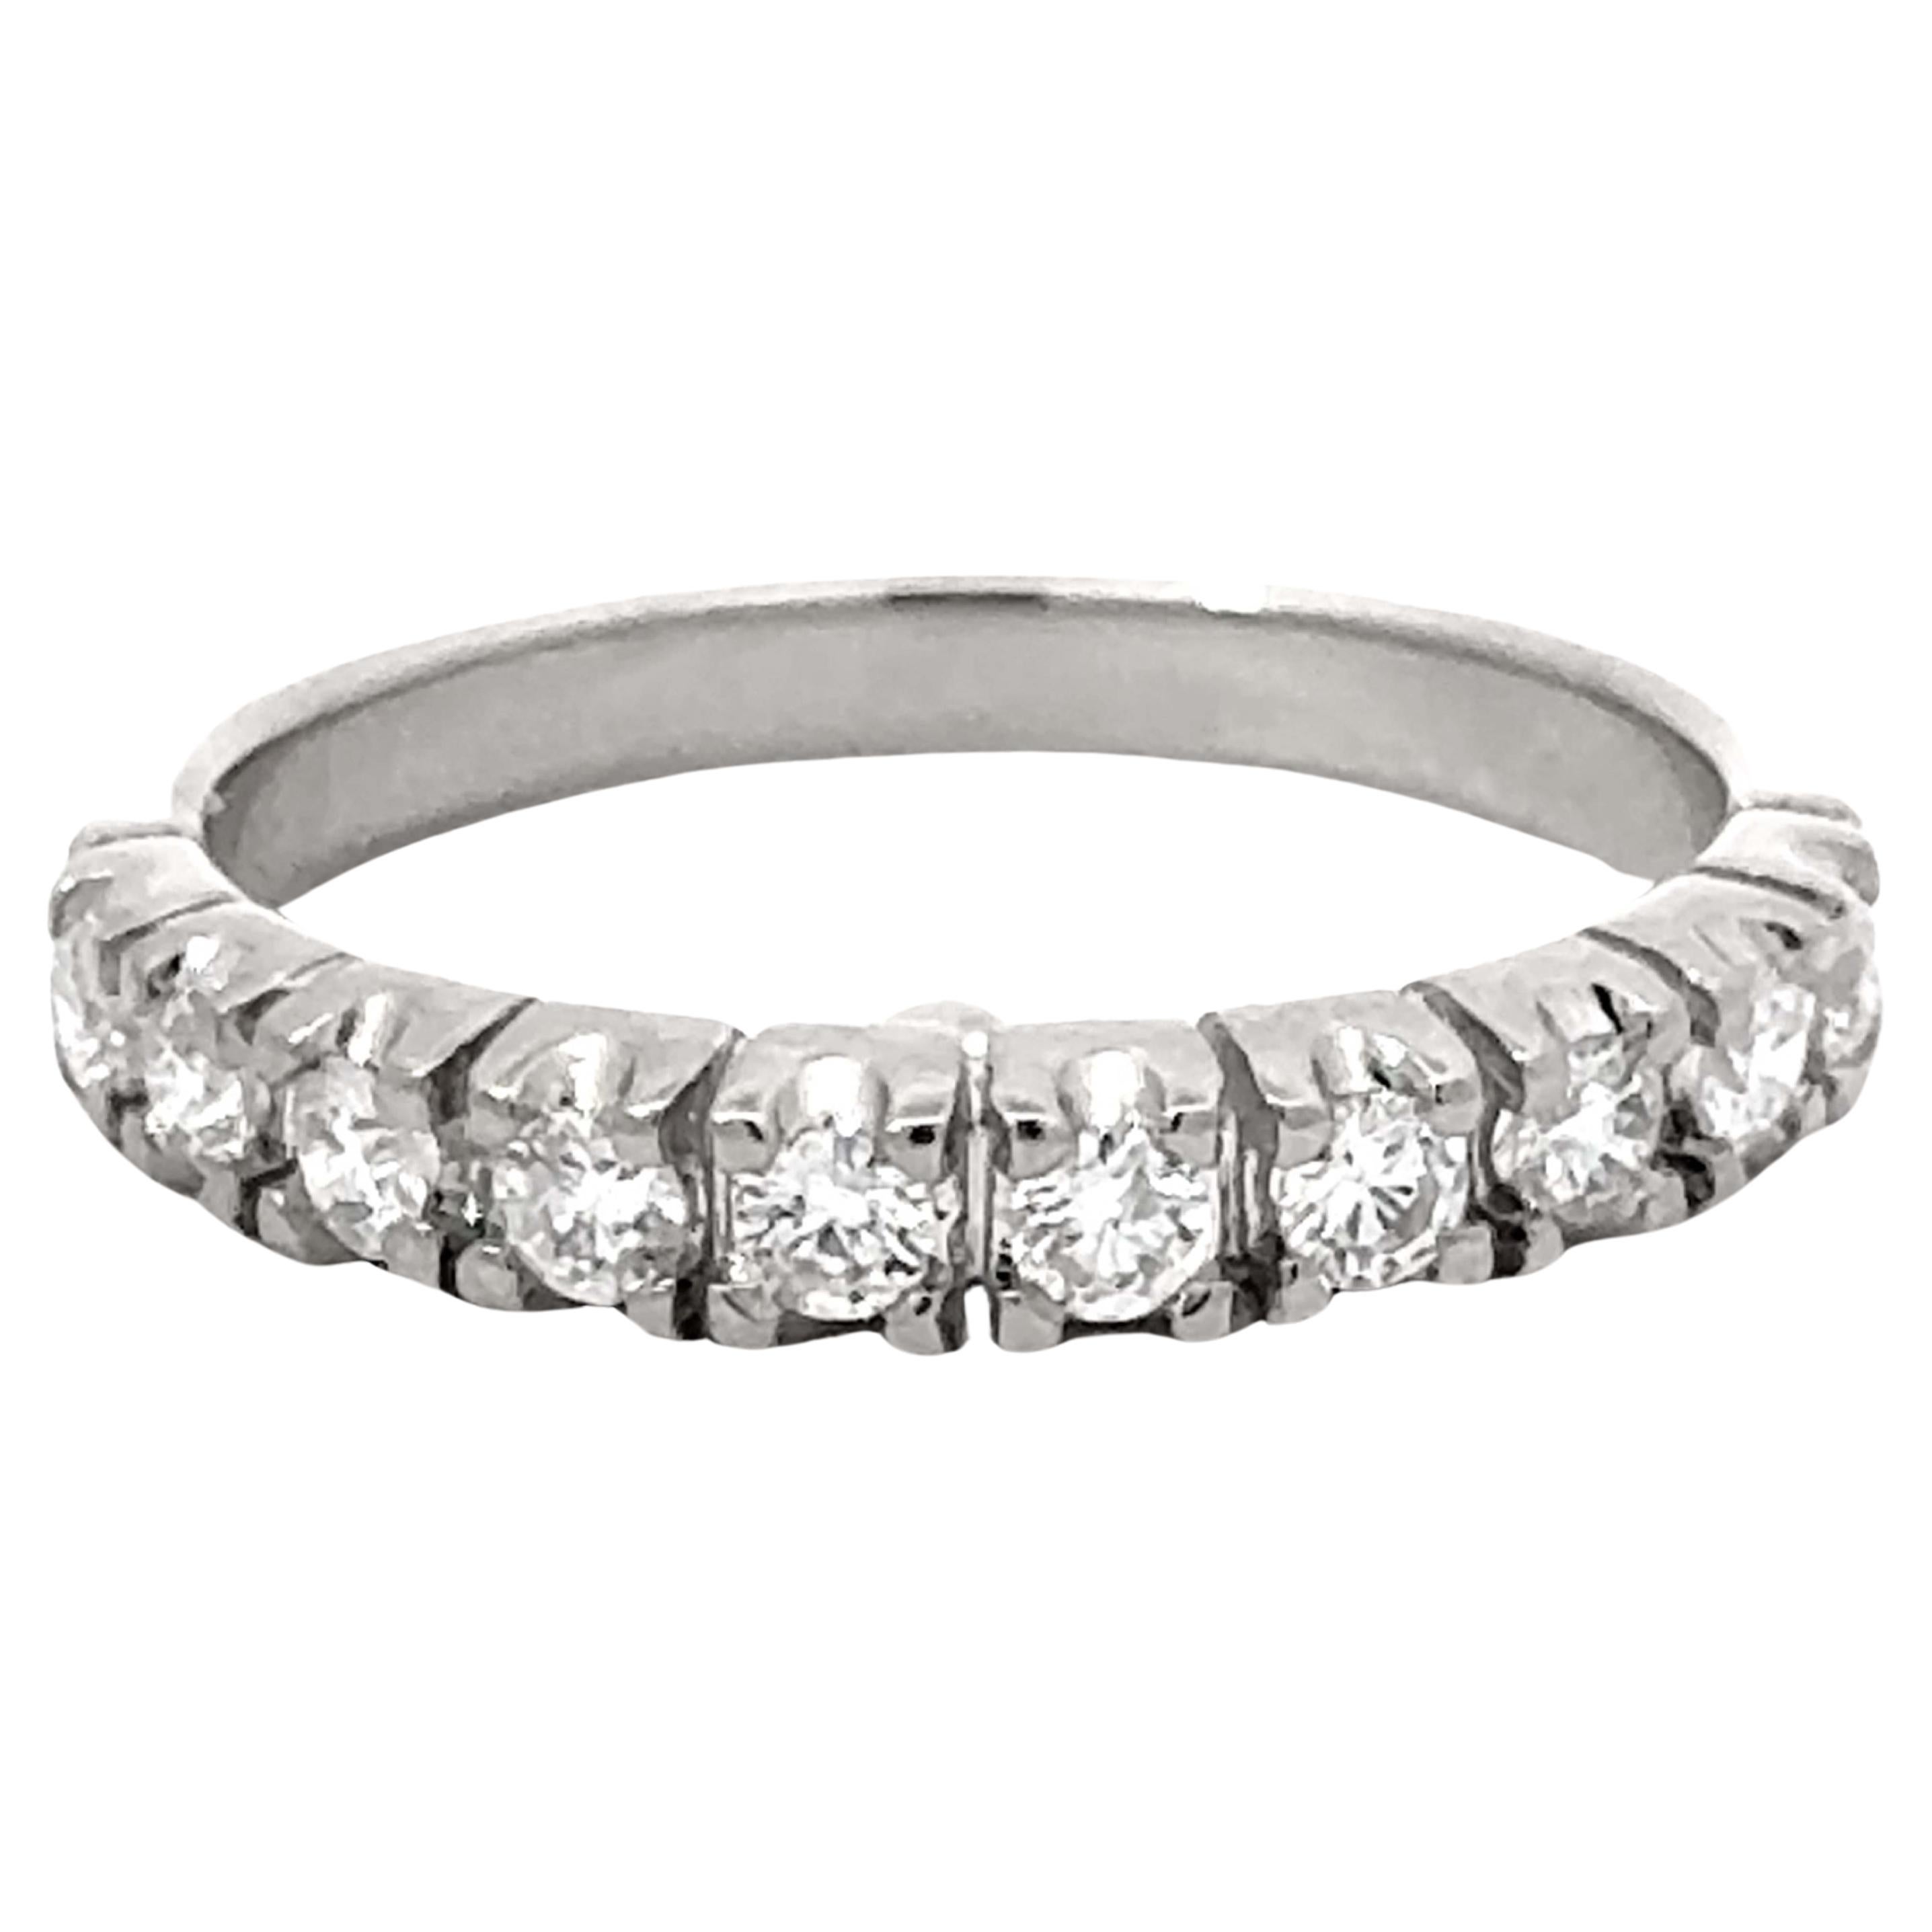 10 Brilliant Diamond Band Ring 18k White Gold